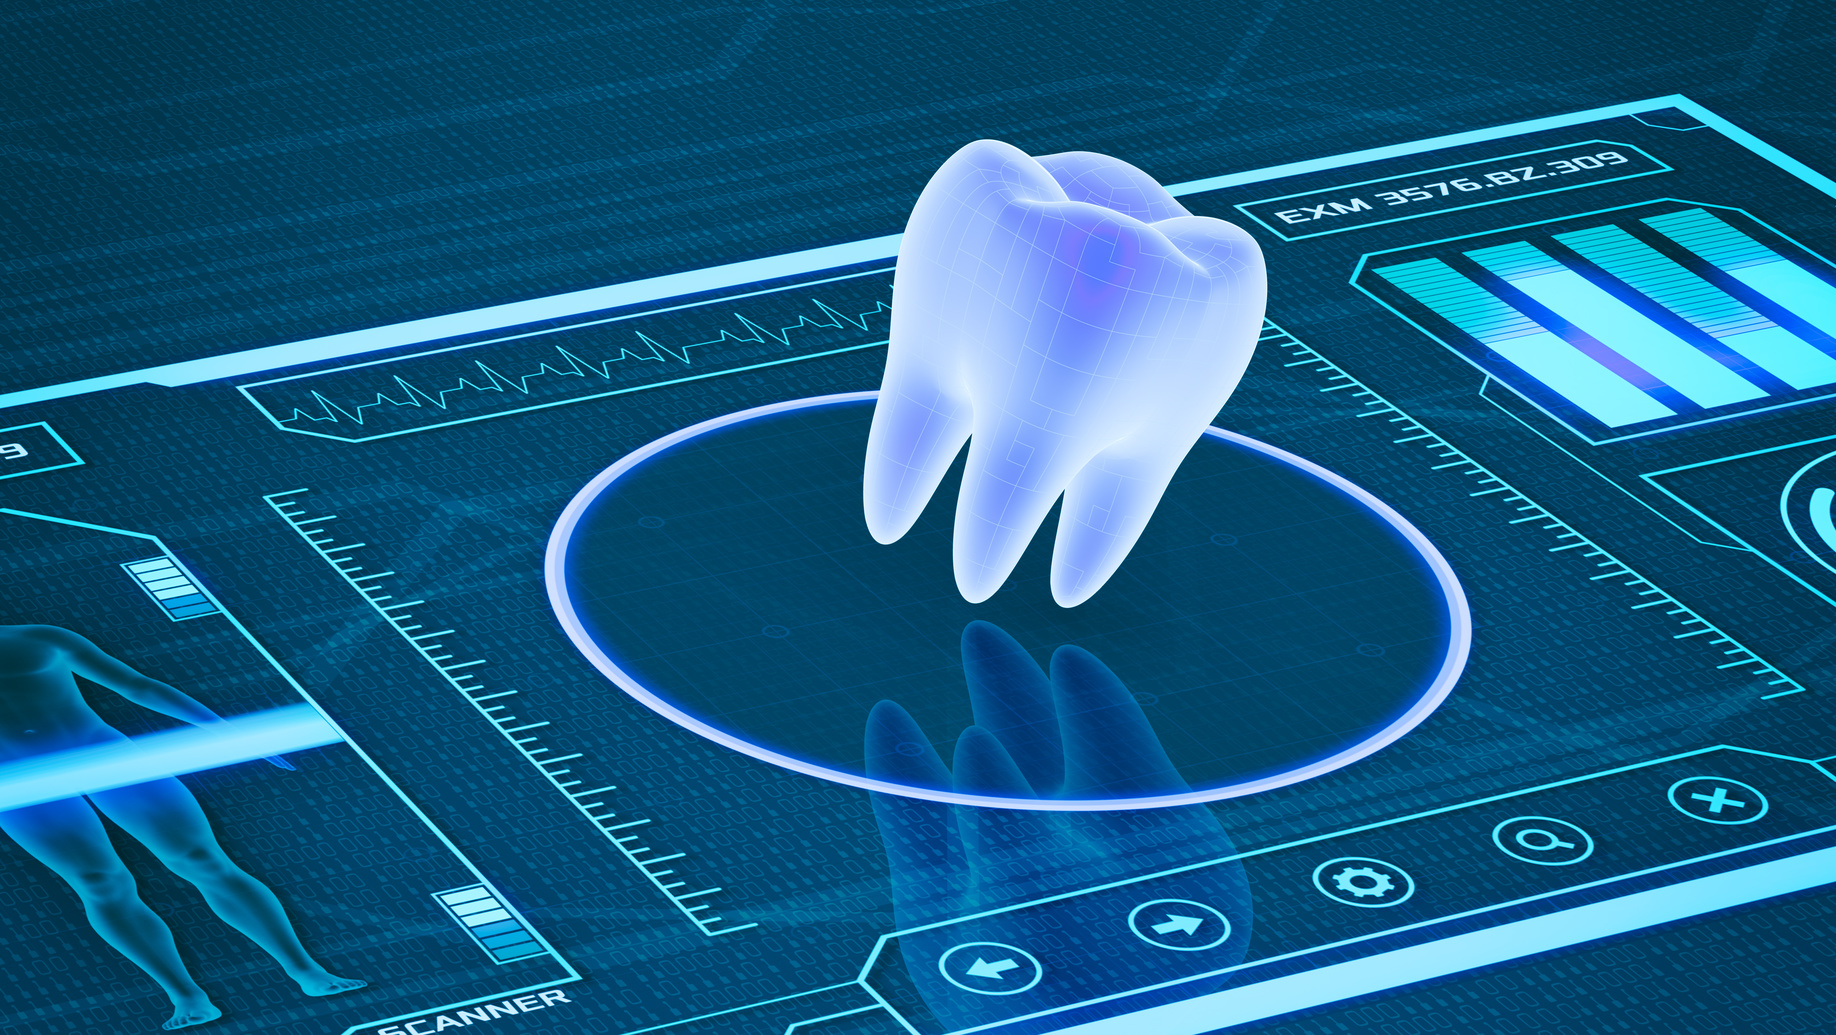 924d312b3b6128ecf9a73549fab9baca Имплантация зубов: современные технологии и преимущества